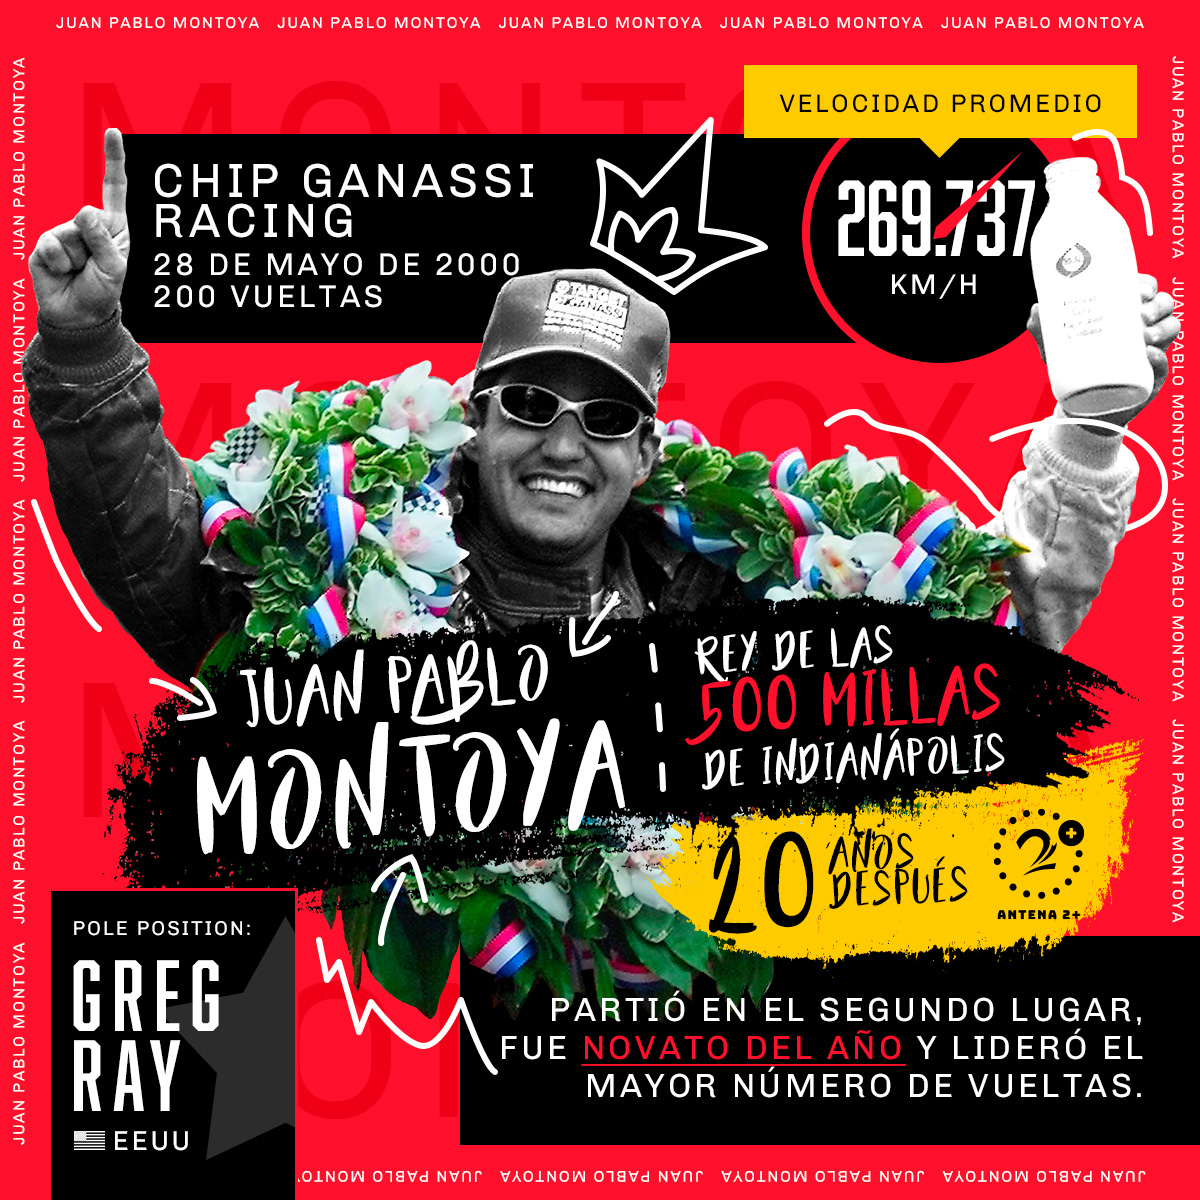 Juan Pablo Montoya, 500 Millas de Indianapolis